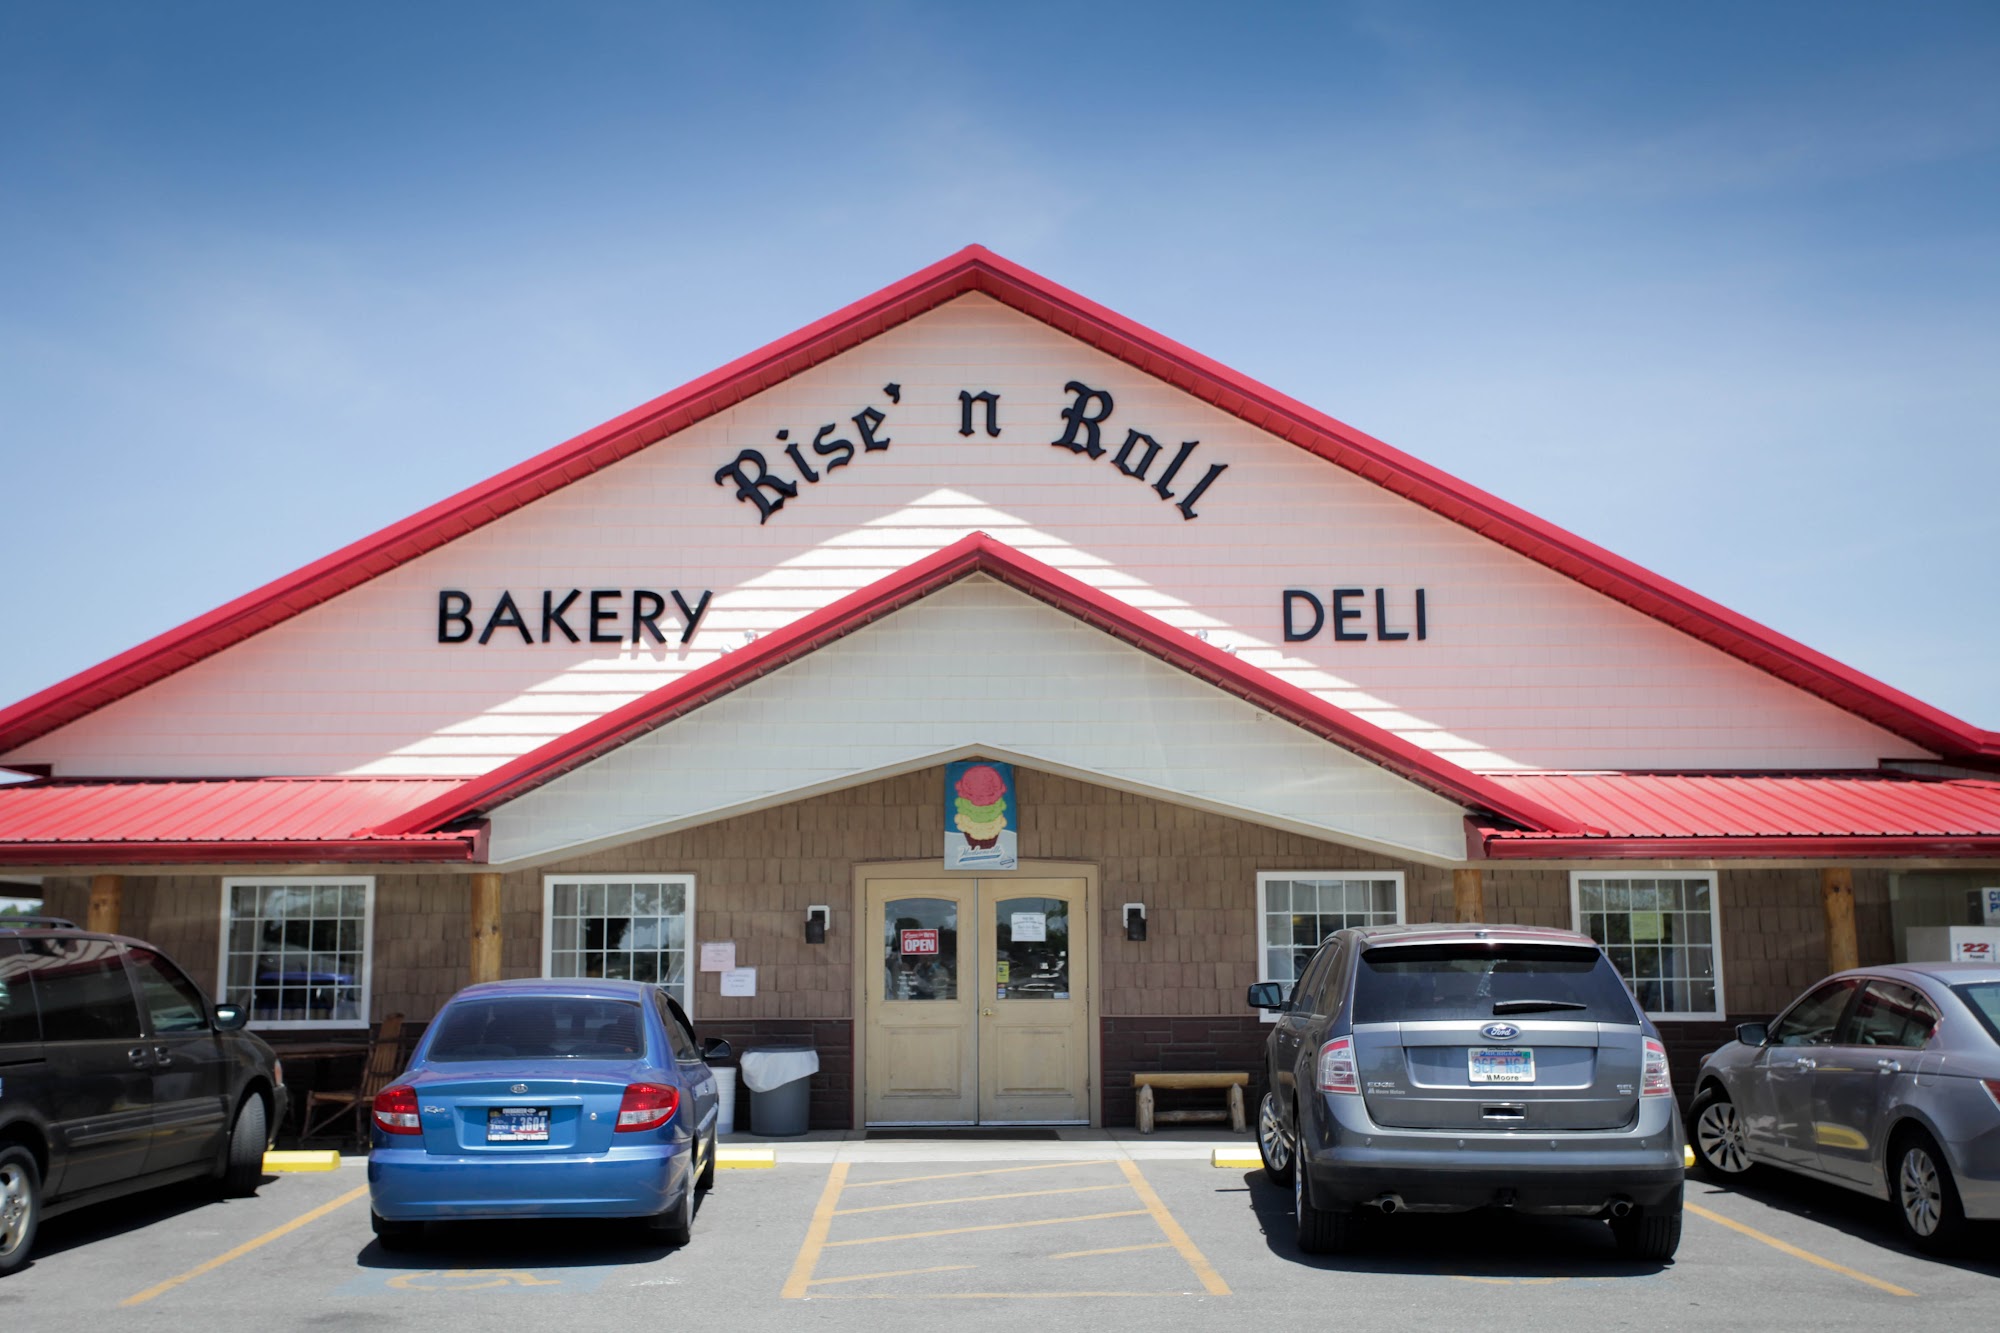 Rise'n Roll Bakery & Deli